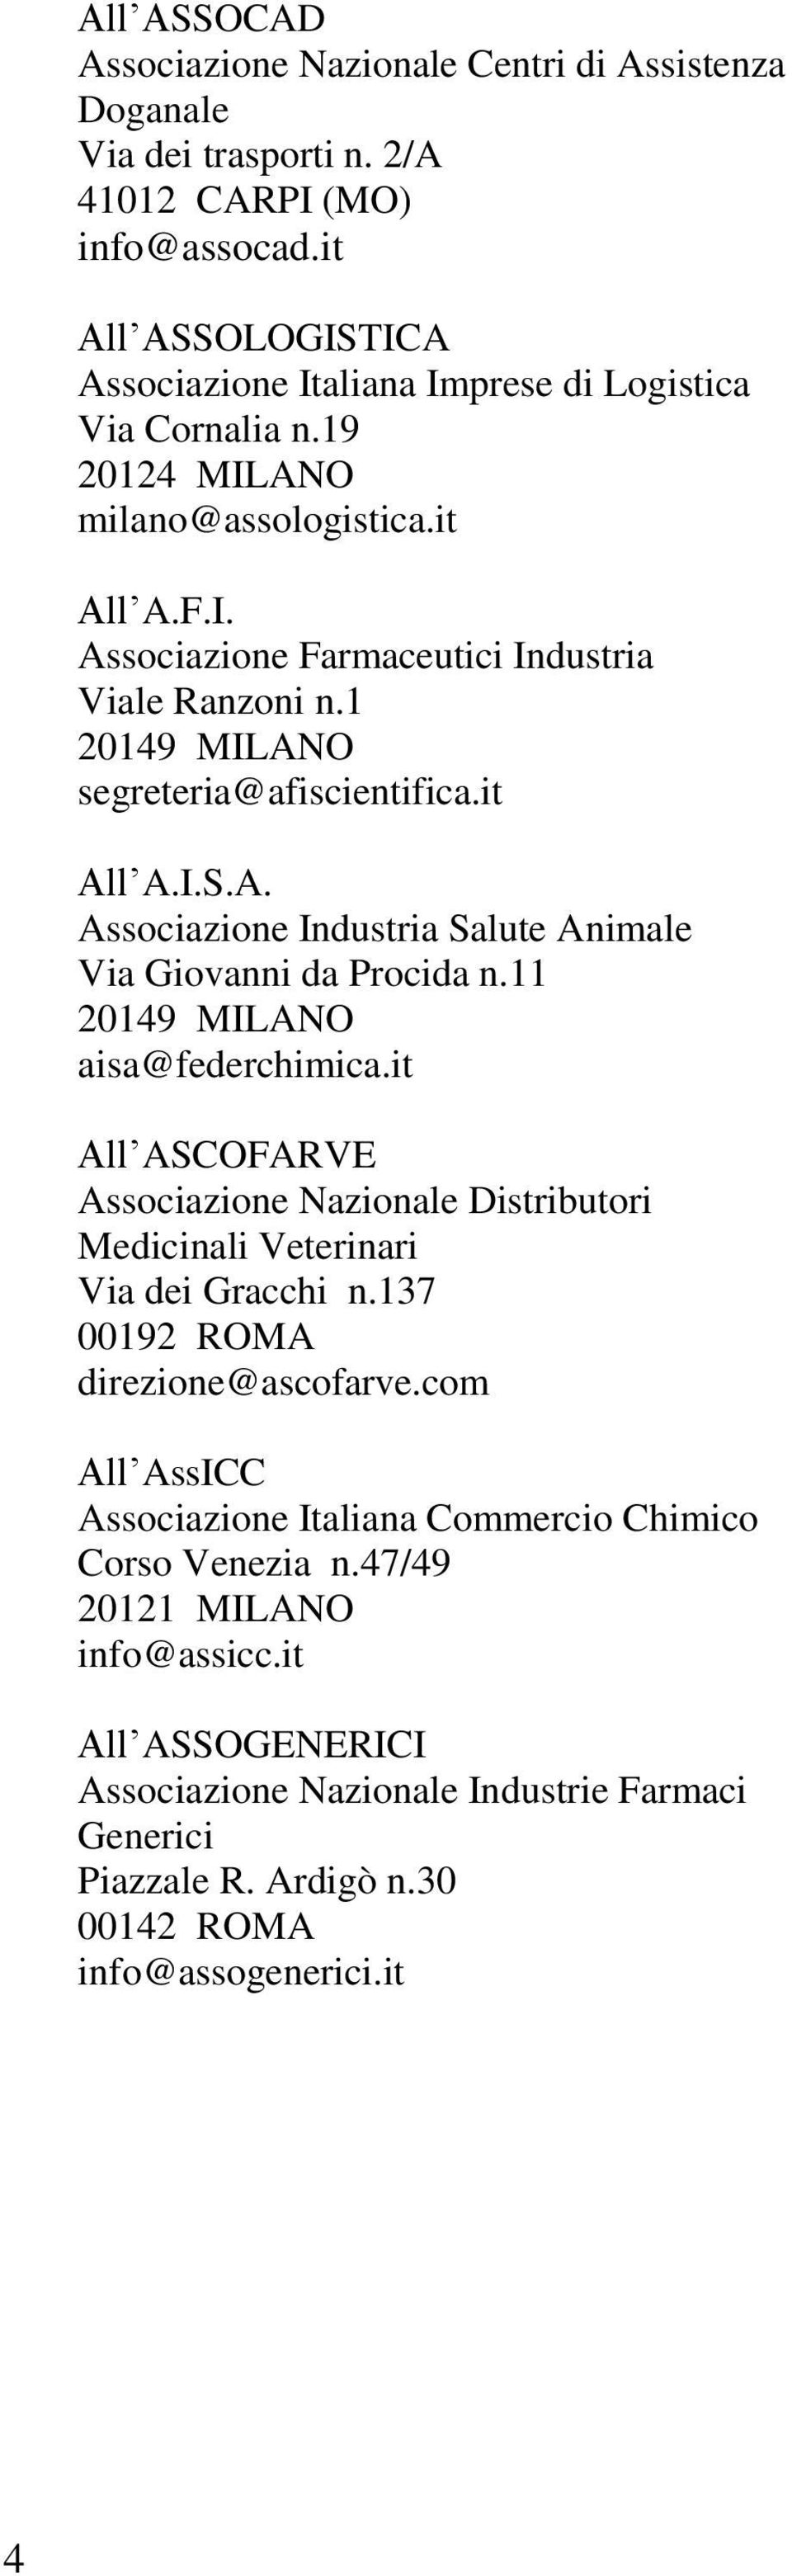 11 20149 MILANO aisa@federchimica.it All ASCOFARVE Associazione Nazionale Distributori Medicinali Veterinari Via dei Gracchi n.137 00192 ROMA direzione@ascofarve.